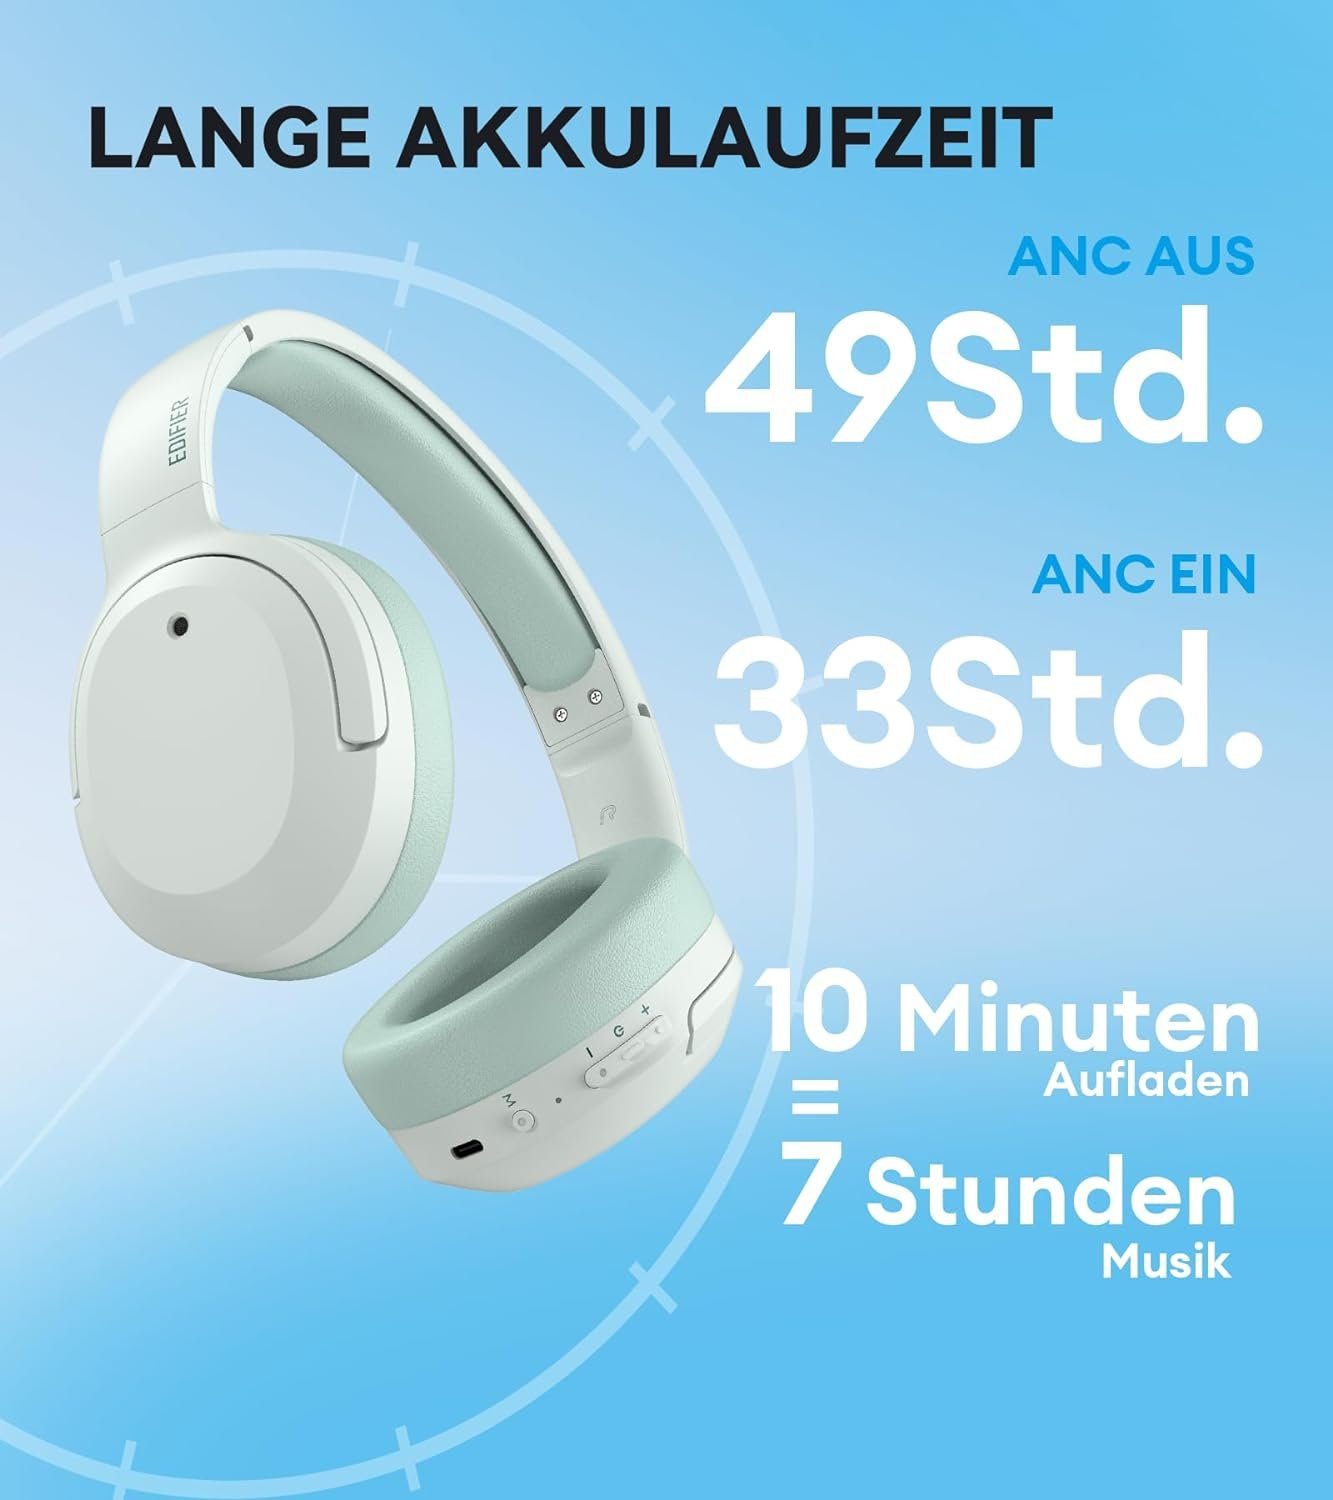 Bluetooth, Spielzeit) W820NB LDAC Audio Gaming-Headset 49 Wired Wireless Plus Schnelllade (Verbesserte Kopfhörer, Stunden & Hi-Res Edifier®